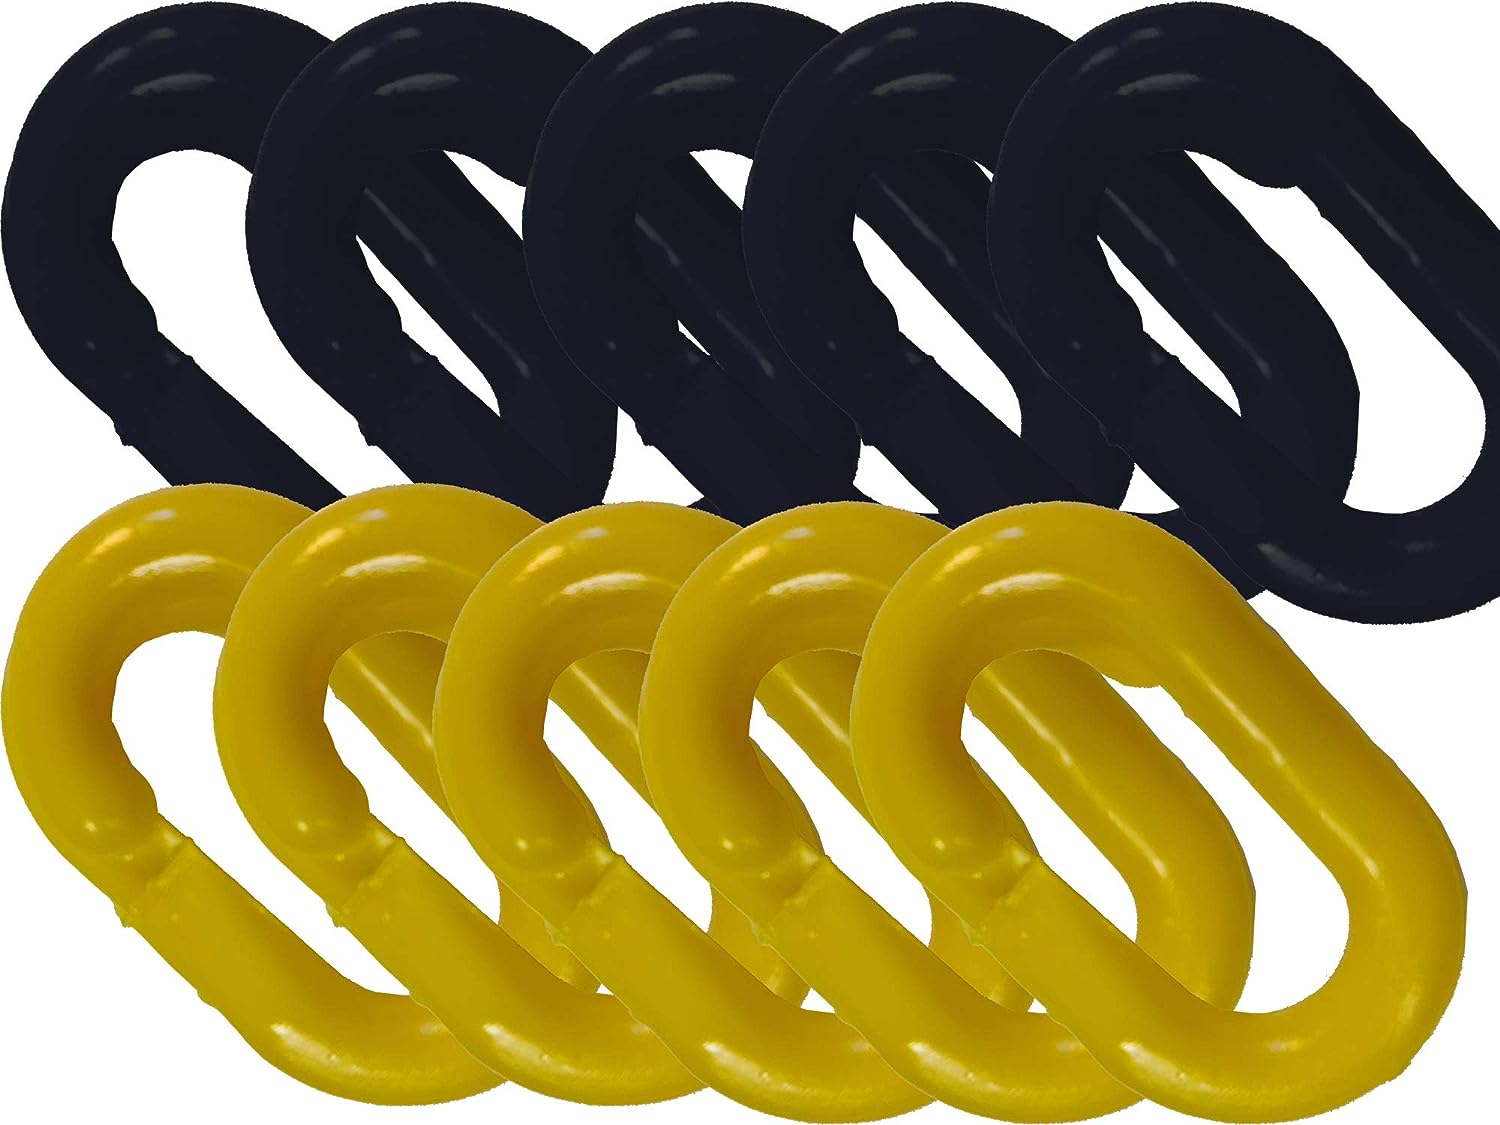 UvV Absperrketten Notglieder 10er Set, Reparatur und Verbindungsglieder aus Kunststoff in vielen Farben und Größen / 8 mm / gelb + schwarz